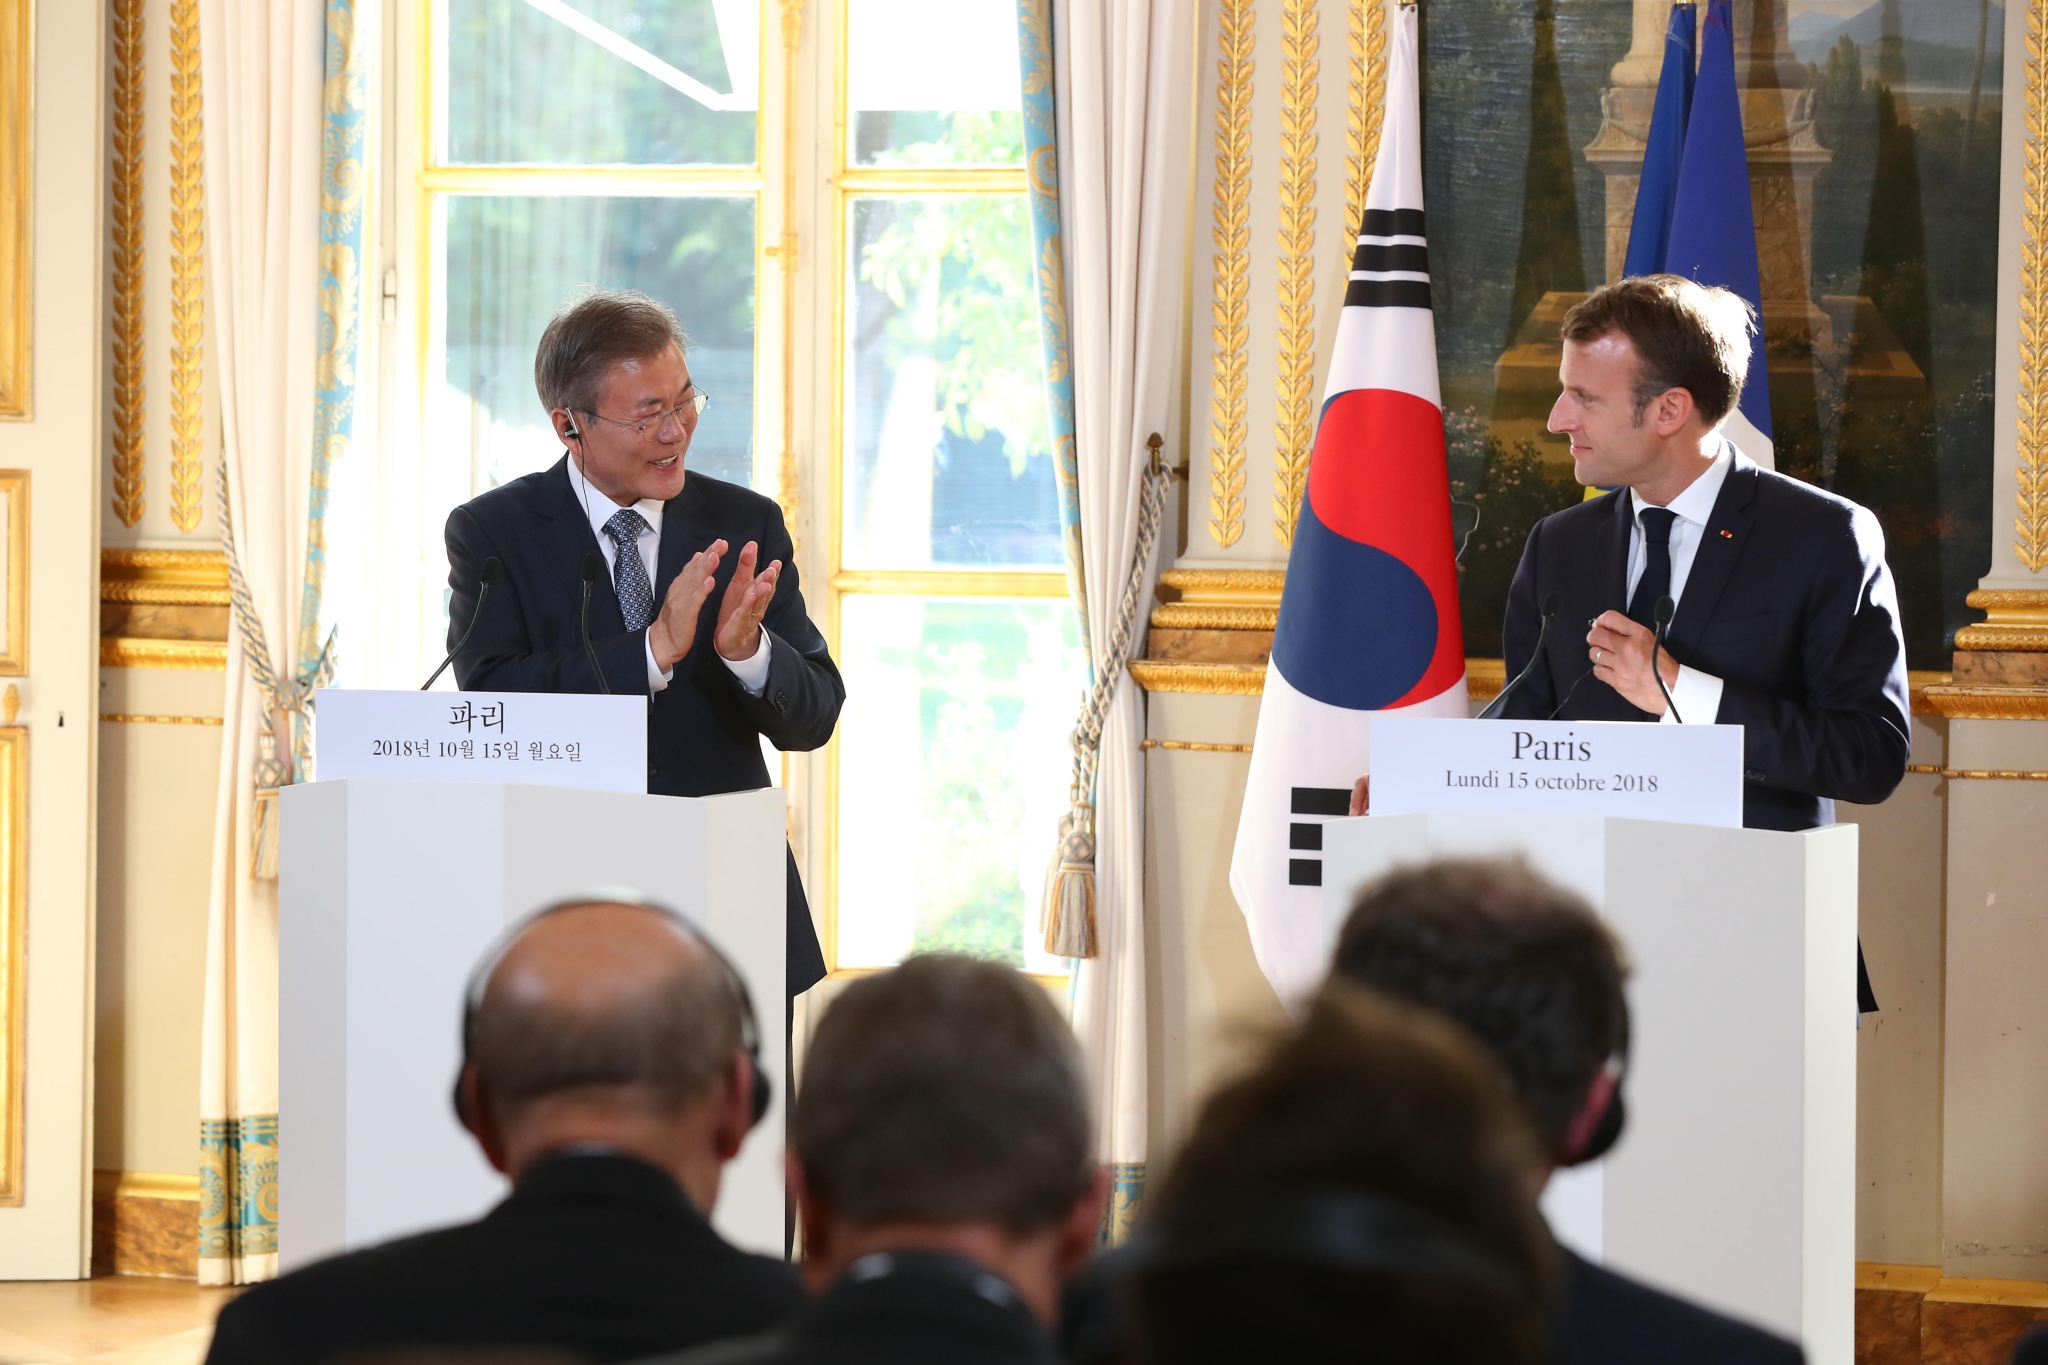 Tổng thống Pháp Emmanuel Macron (phải) và Tổng thống Hàn Quốc Moon Jae-in (trái) tại cuộc họp báo chung sau cuộc gặp ở Paris, Pháp ngày 15/10/2018. (Ảnh: Yonhap/TTXVN)